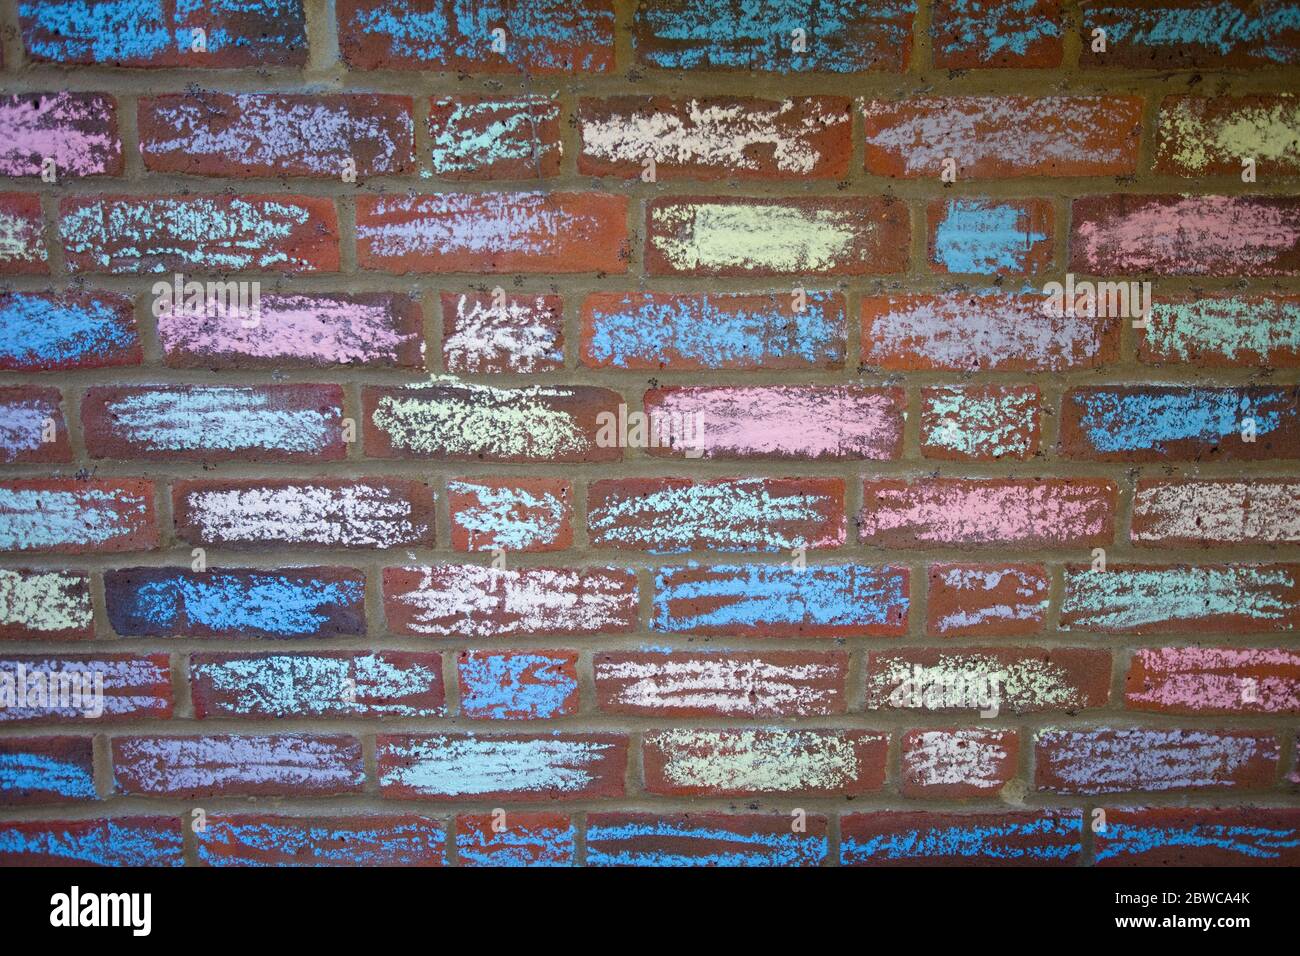 Chalk pastel painted house bricks, Uk Stock Photo